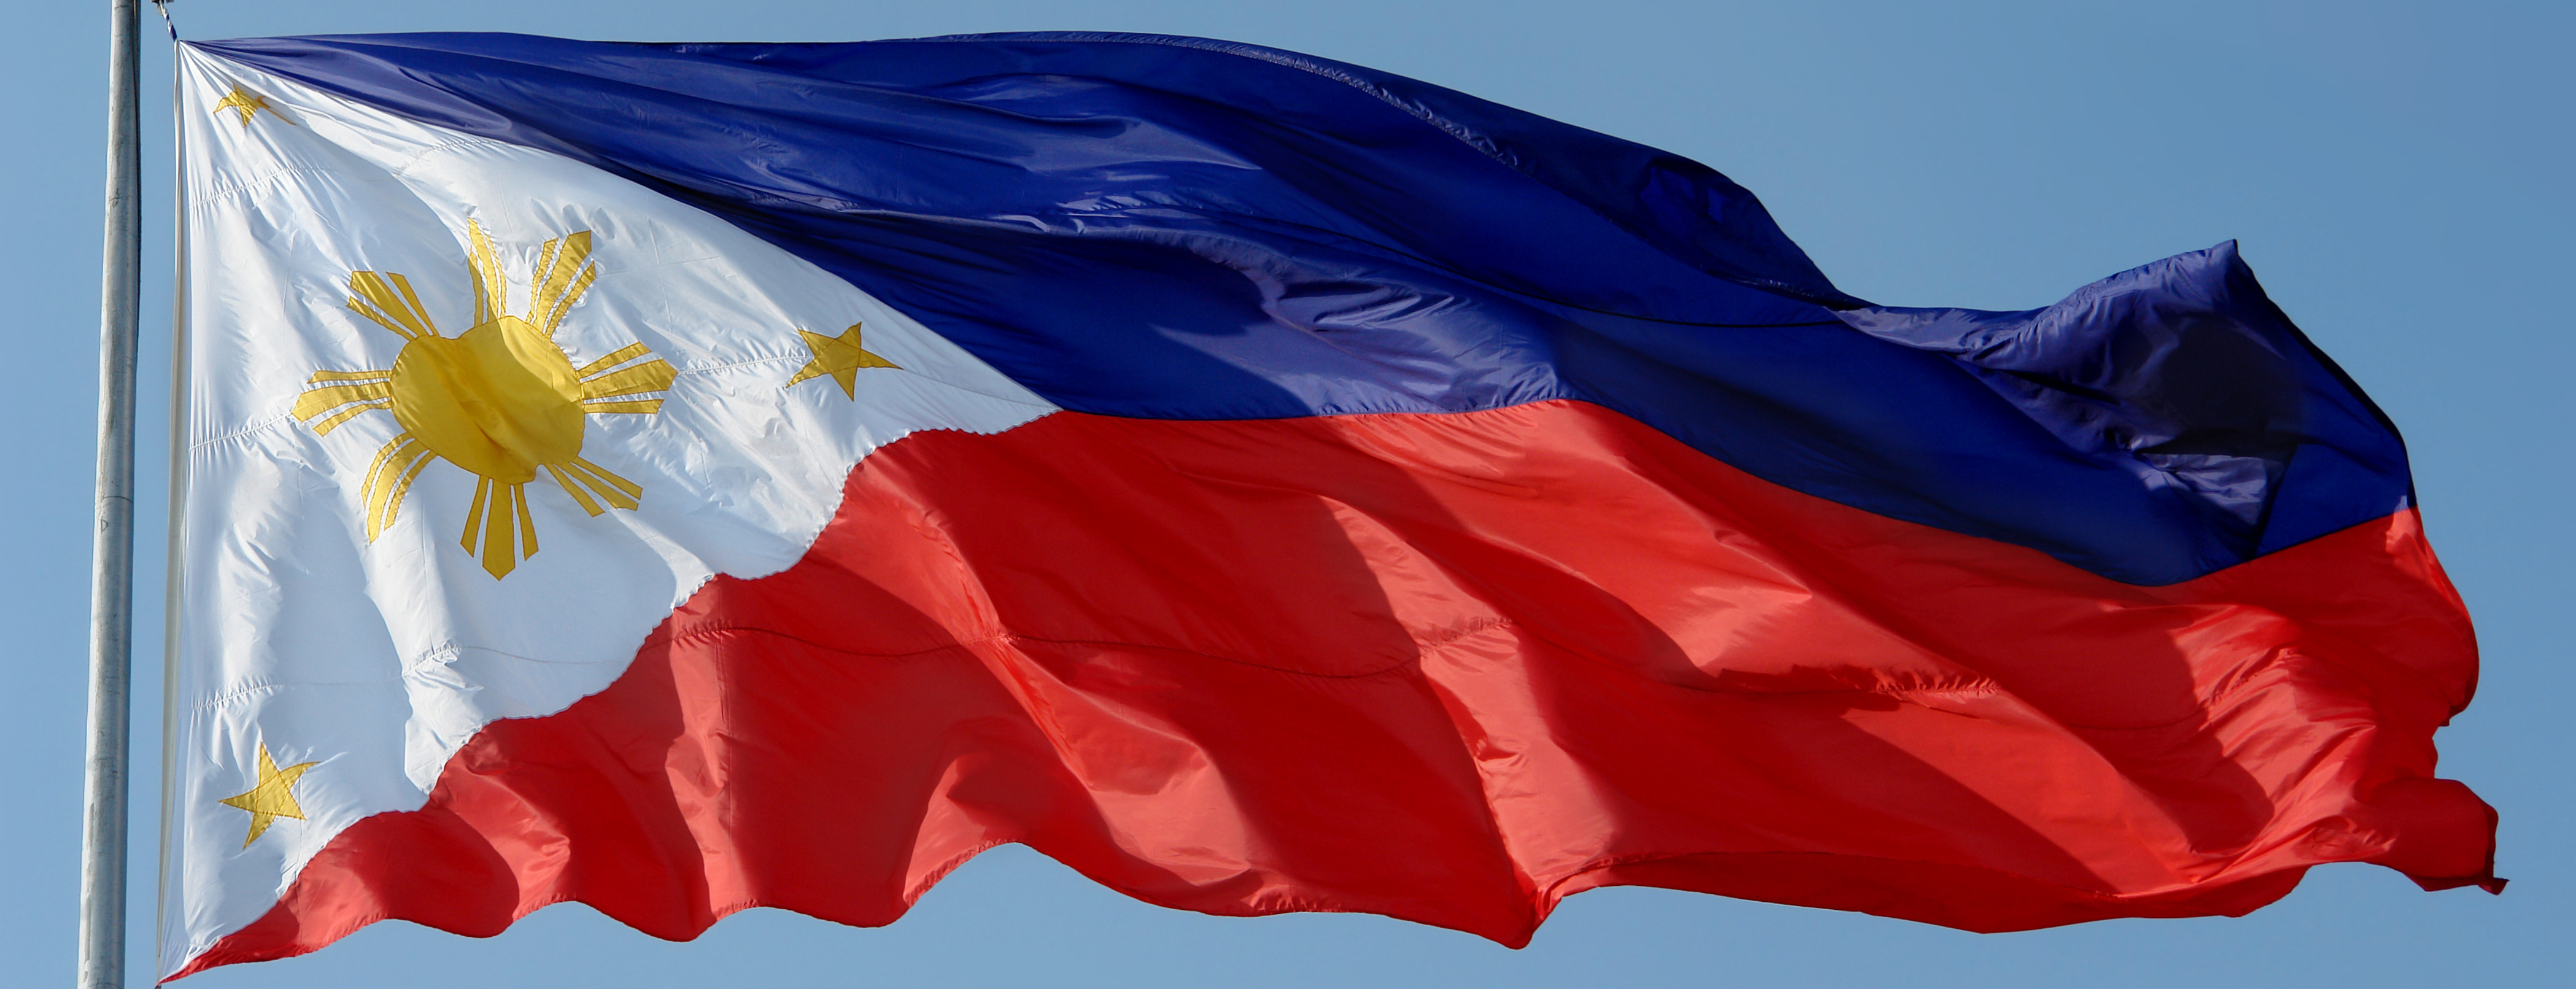 Philippines Flag Wallpaper - WallpaperSafari